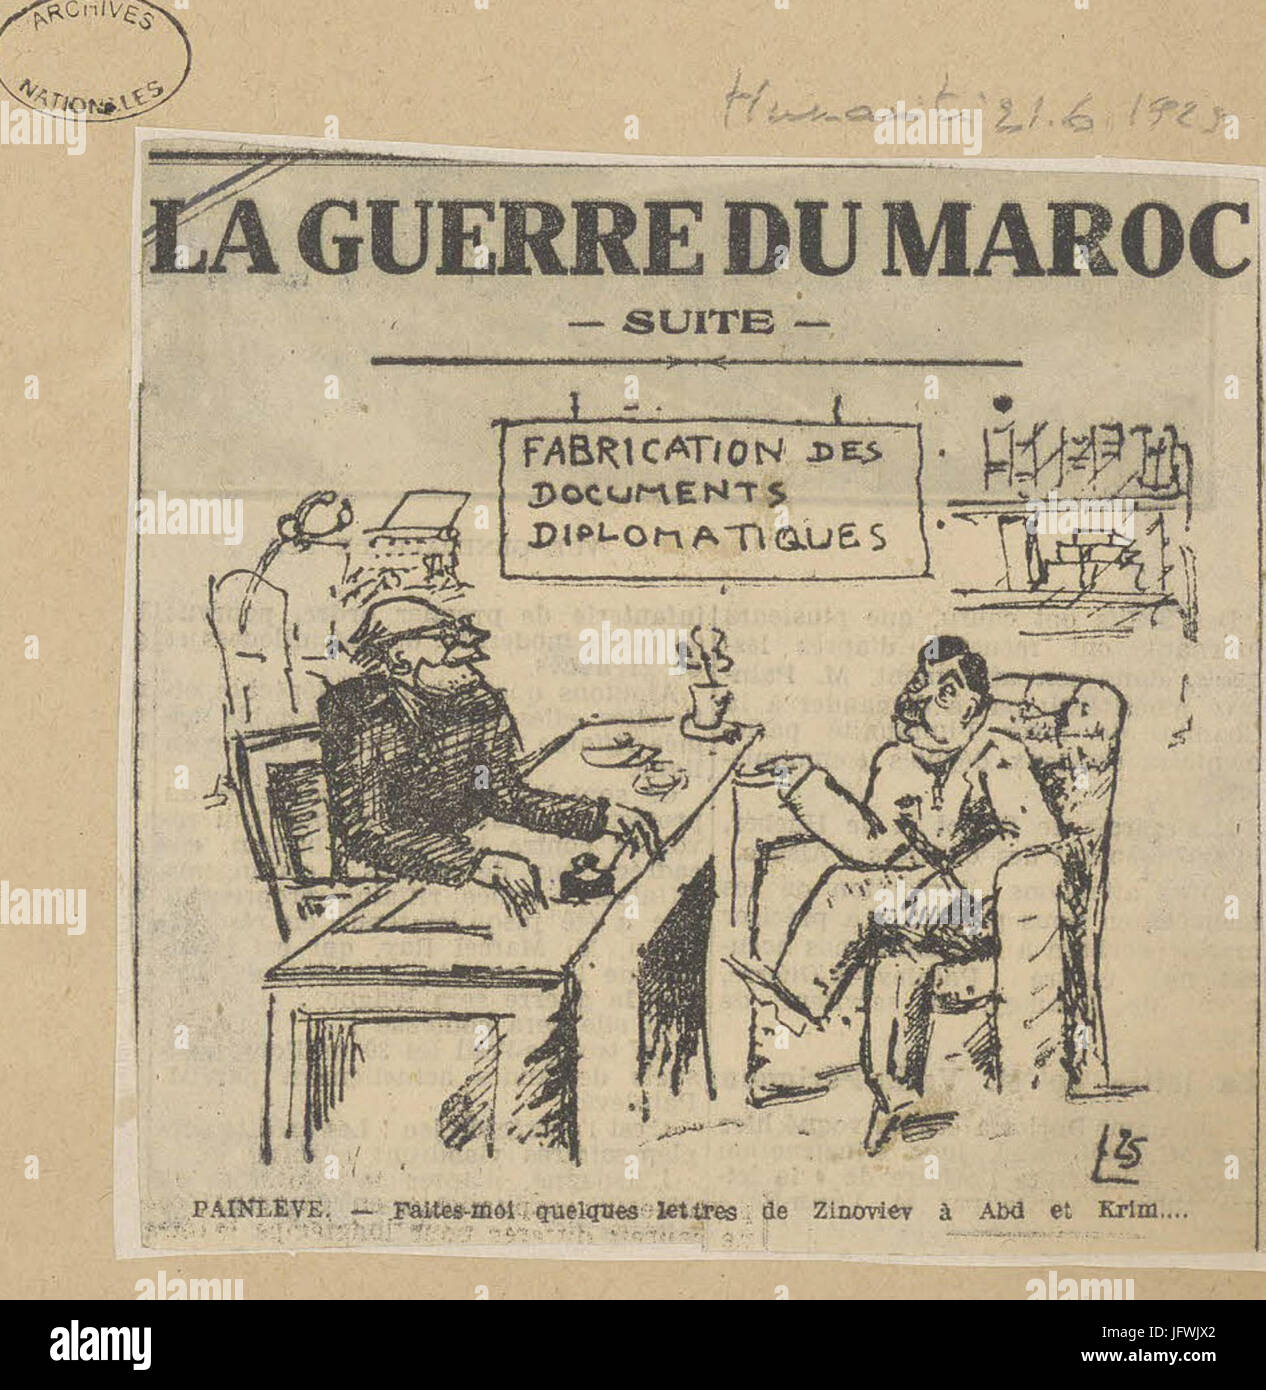 Karikatur von Paul Painlevé, Président du Conseil, Par Laquelle il est Accusé de Fabriquer de faux Papiers Diplomatique - Archives Nationales - 313AP-20 - (1) Stockfoto